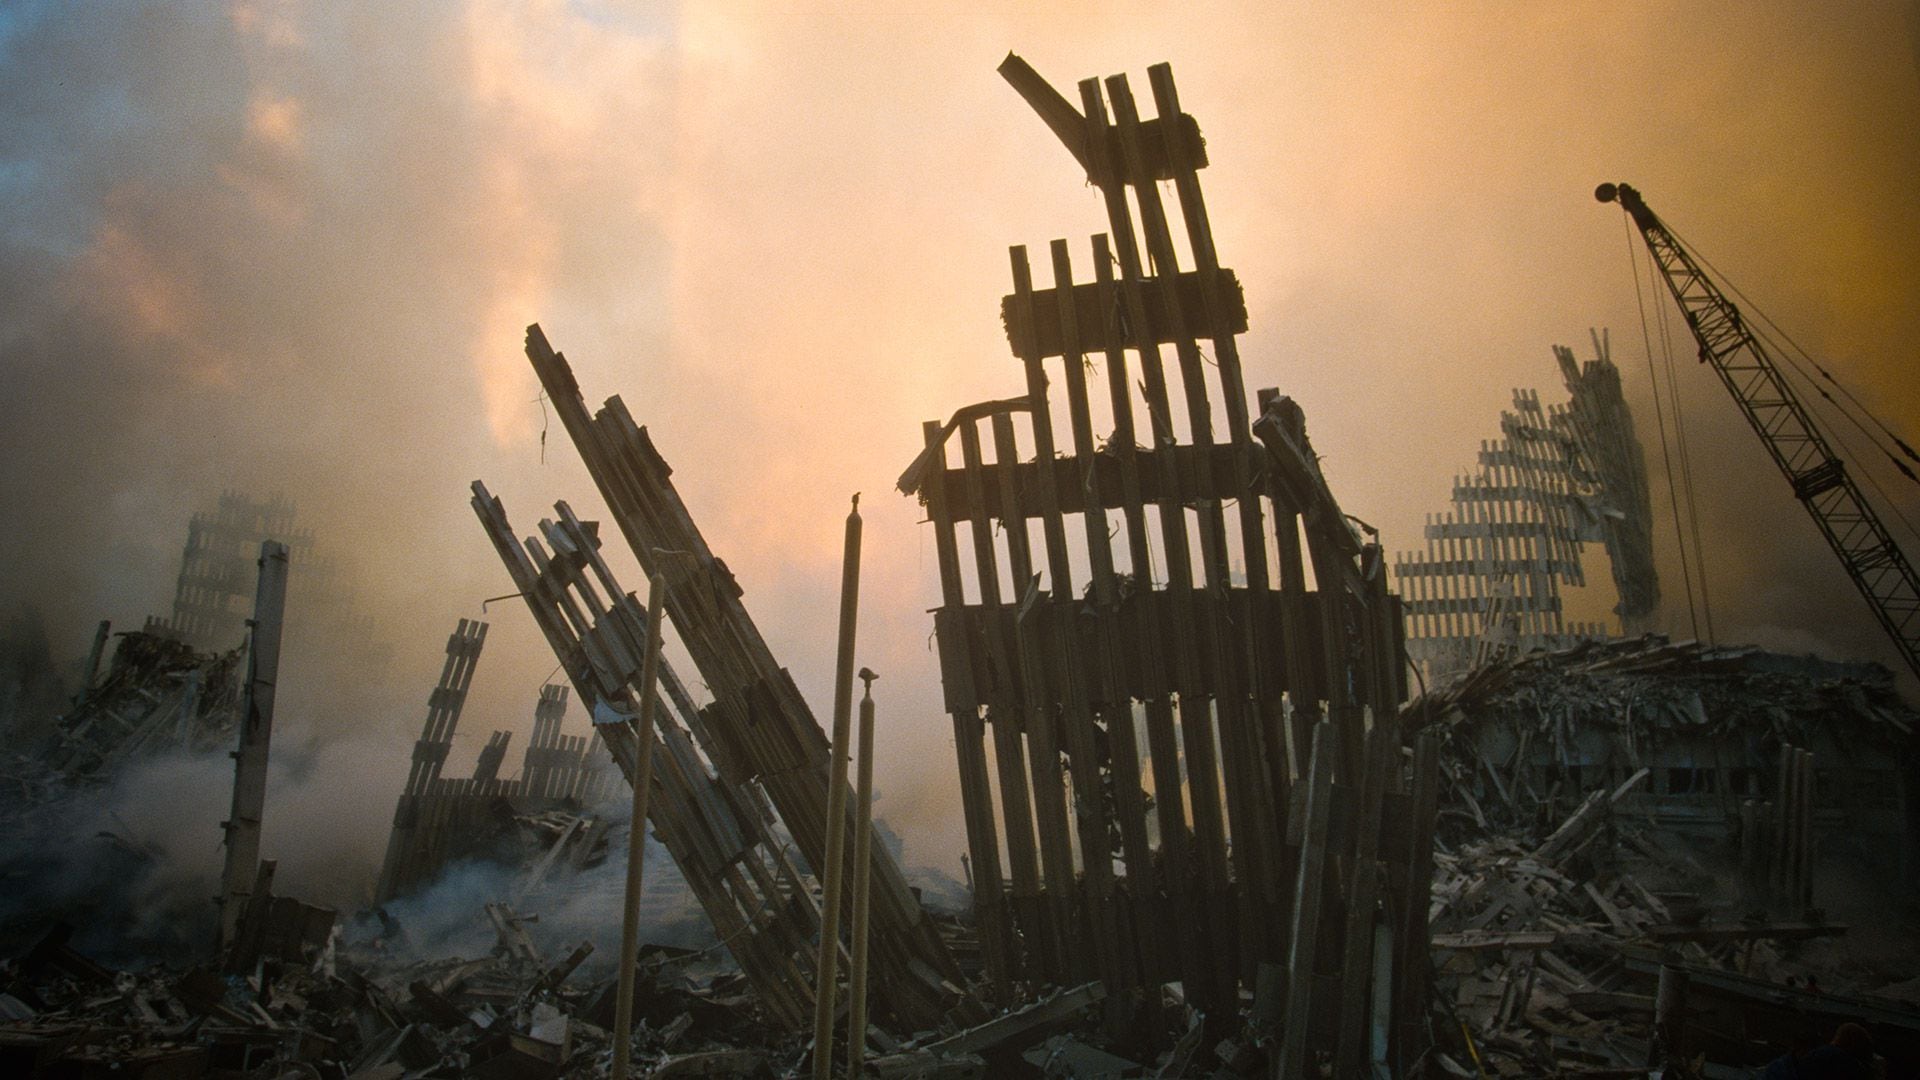 Como fantasmas en la niebla, los escombros del WTC estuvieron varios meses recordando el atentado, hasta que fueron removidos. Hoy, una fuente homenajea a las 3.000 víctimas. (Photo by Porter Gifford/Corbis via Getty Images)